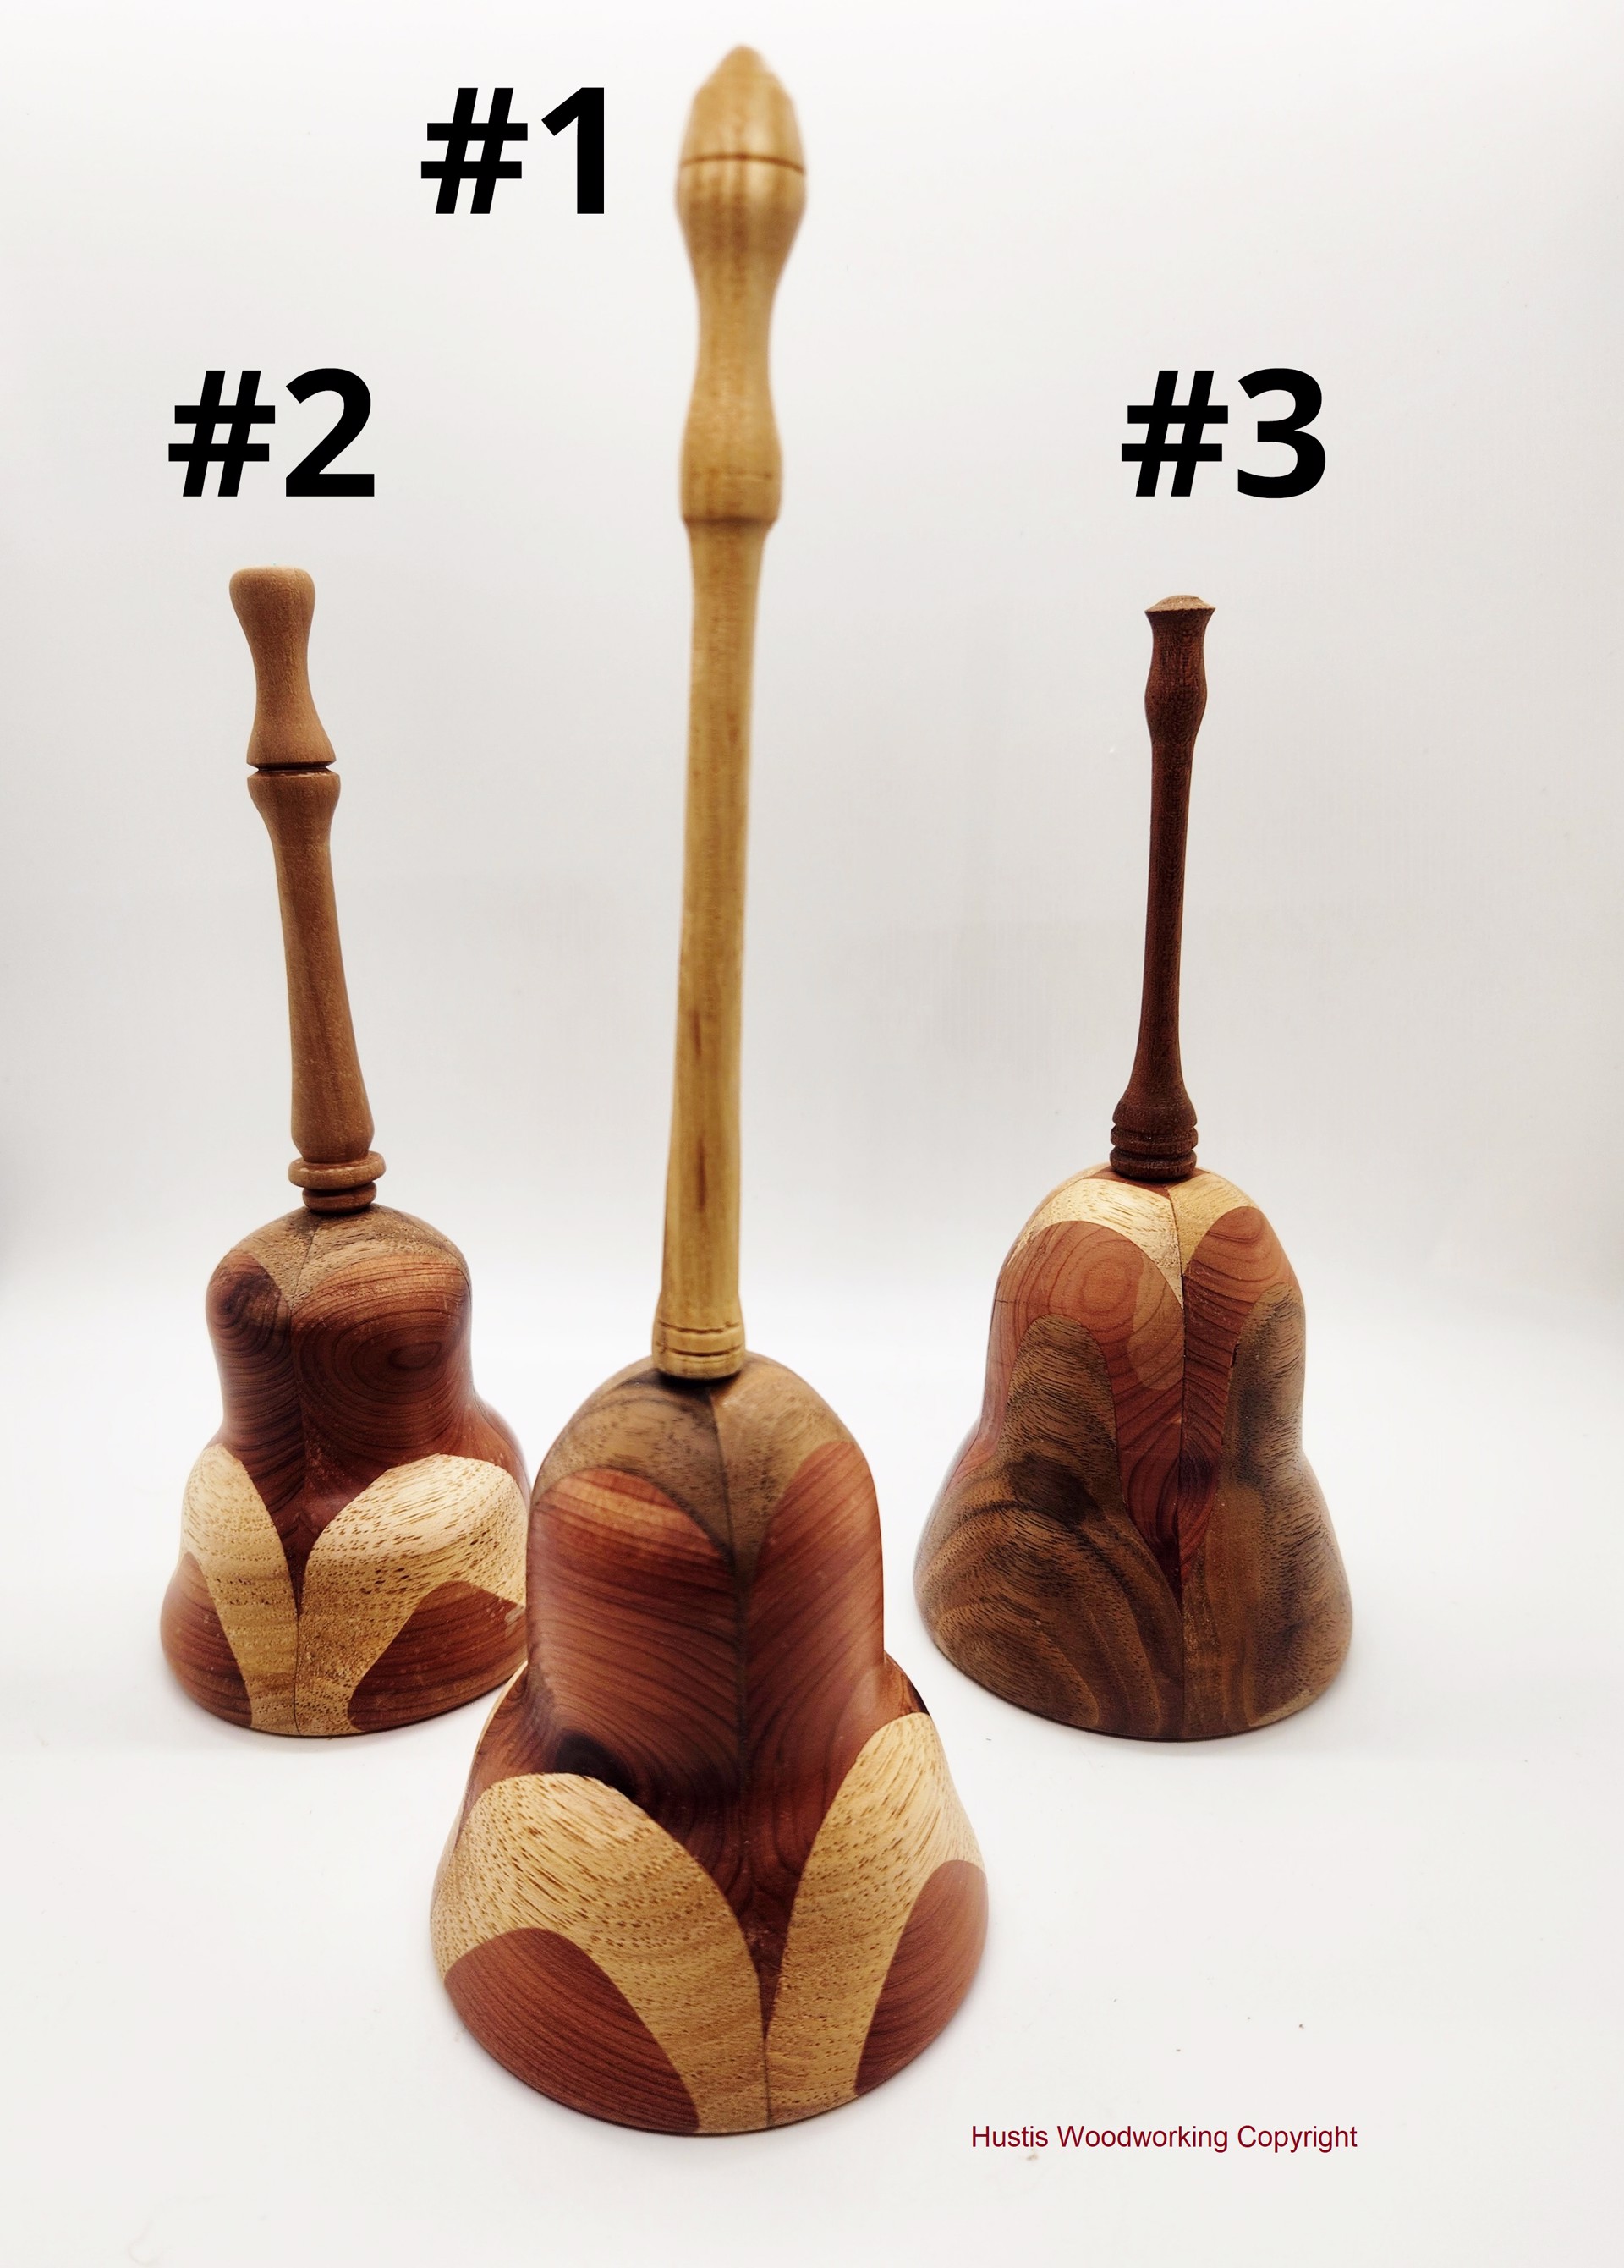 Bell (Segmented Wood) #3 by Mark Hustis